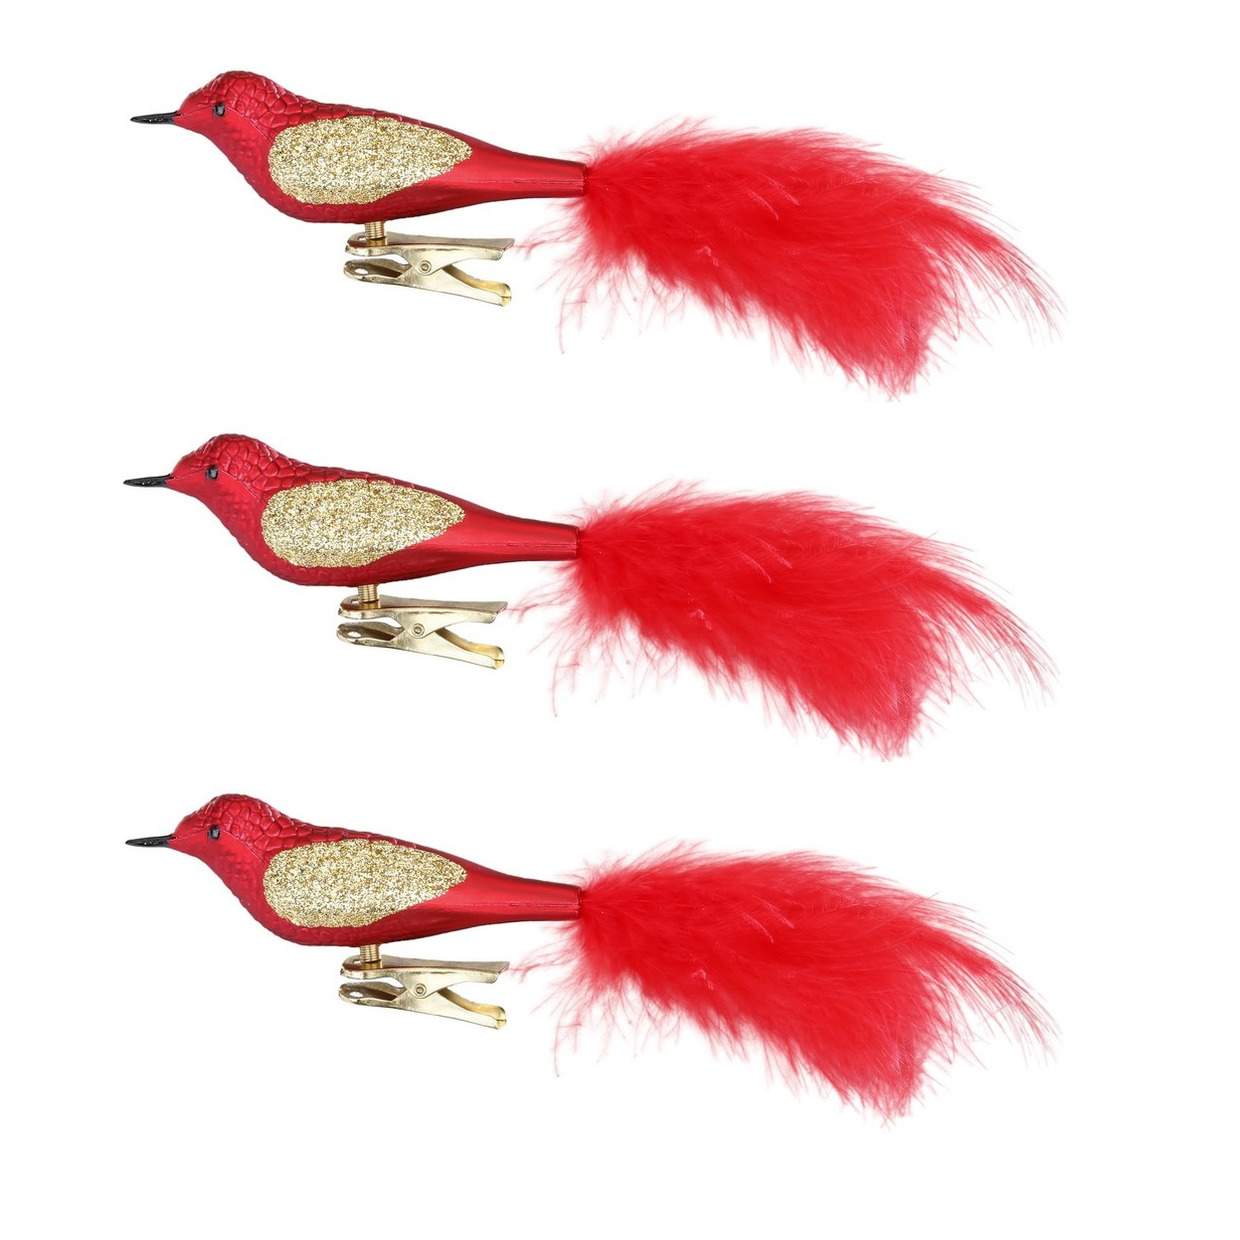 3x stuks decoratie vogels op clip rood 20 cm